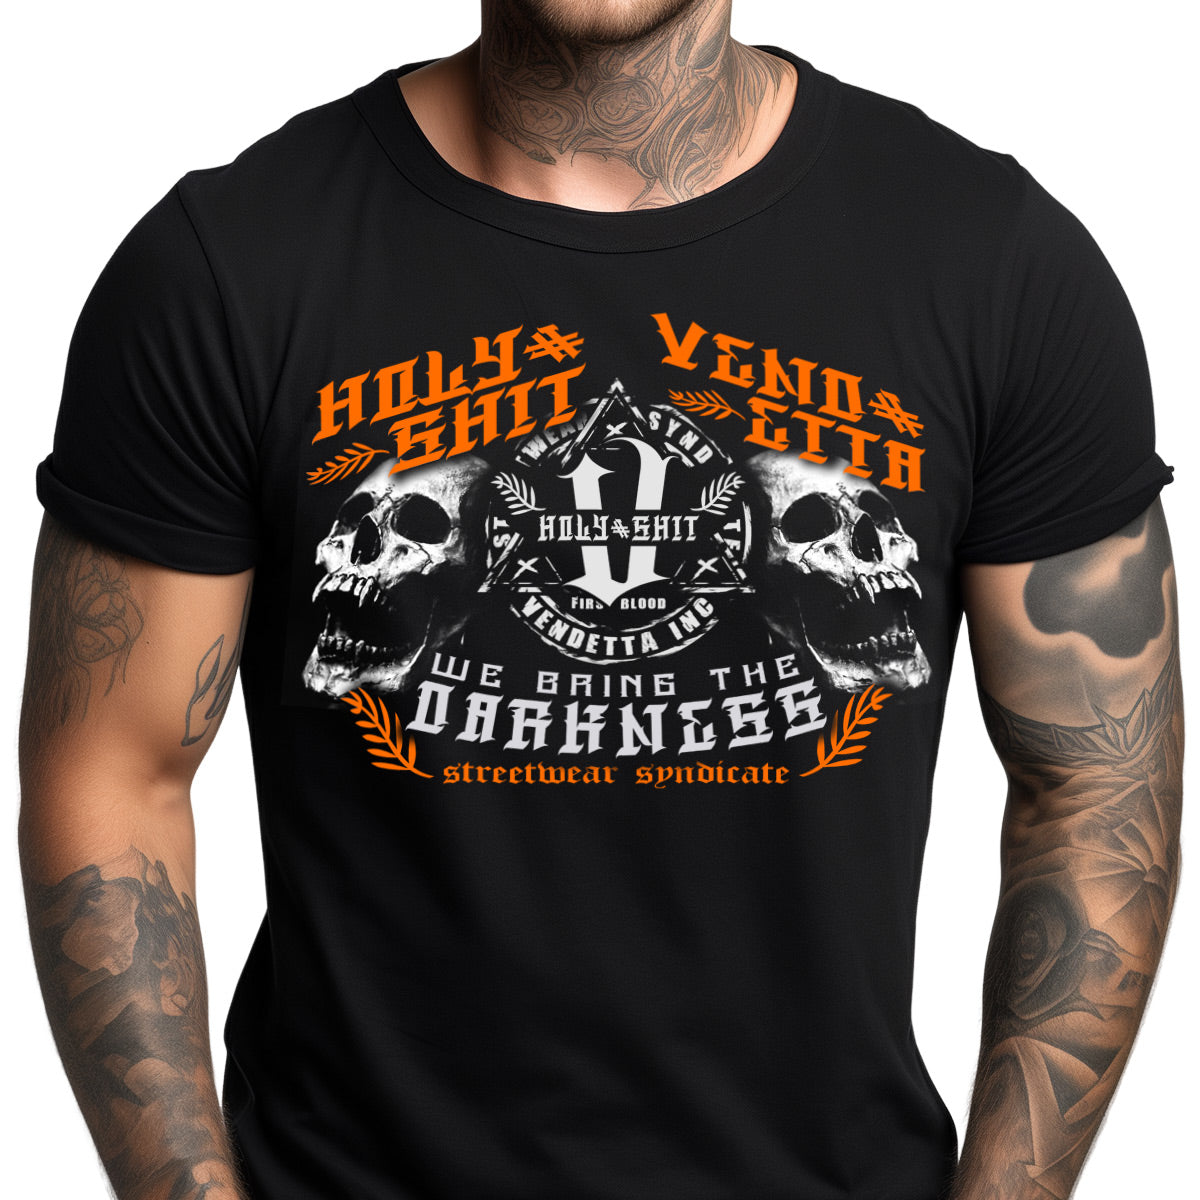 Vendetta Inc. Shirt schwarz Darkness "2"